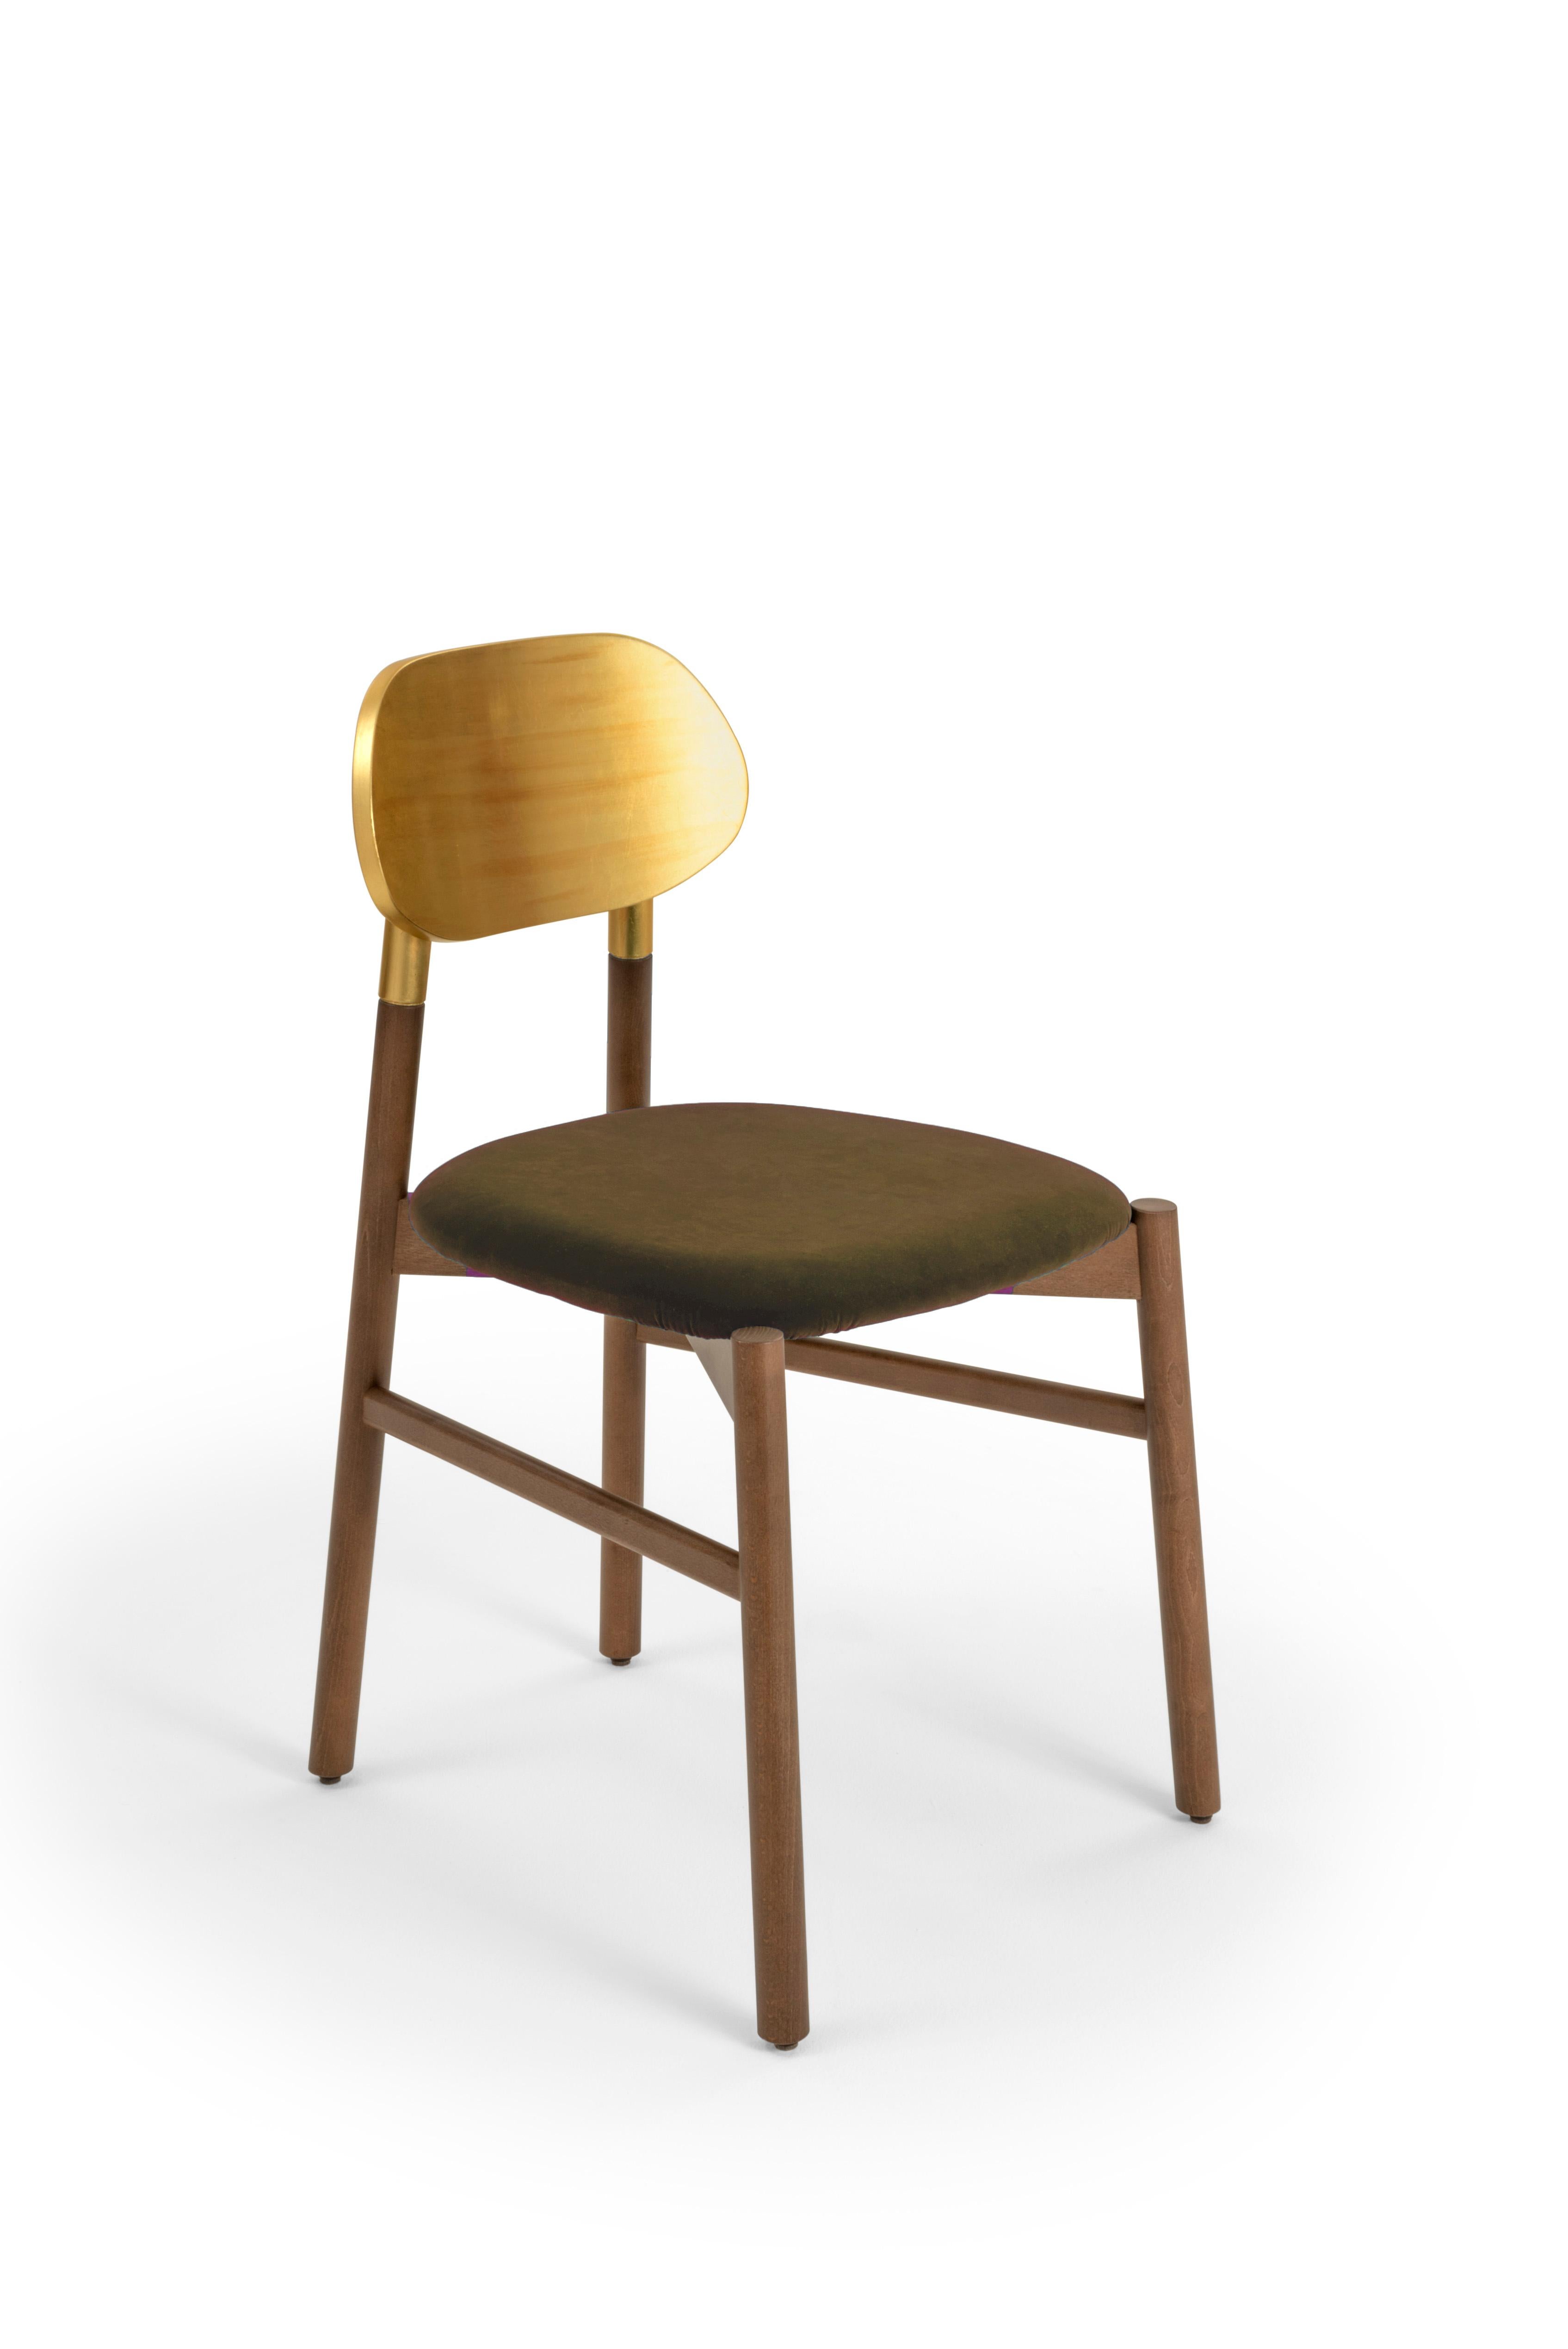 Chaise tapissée Bokken en bois de hêtre teinté noyer, dossier en feuille d'or et assise rembourrée recouverte d'un velours Rubelli de qualité supérieure. Qualité italienne pure.
Une chaise essentielle dans la forme, mais précieuse dans les